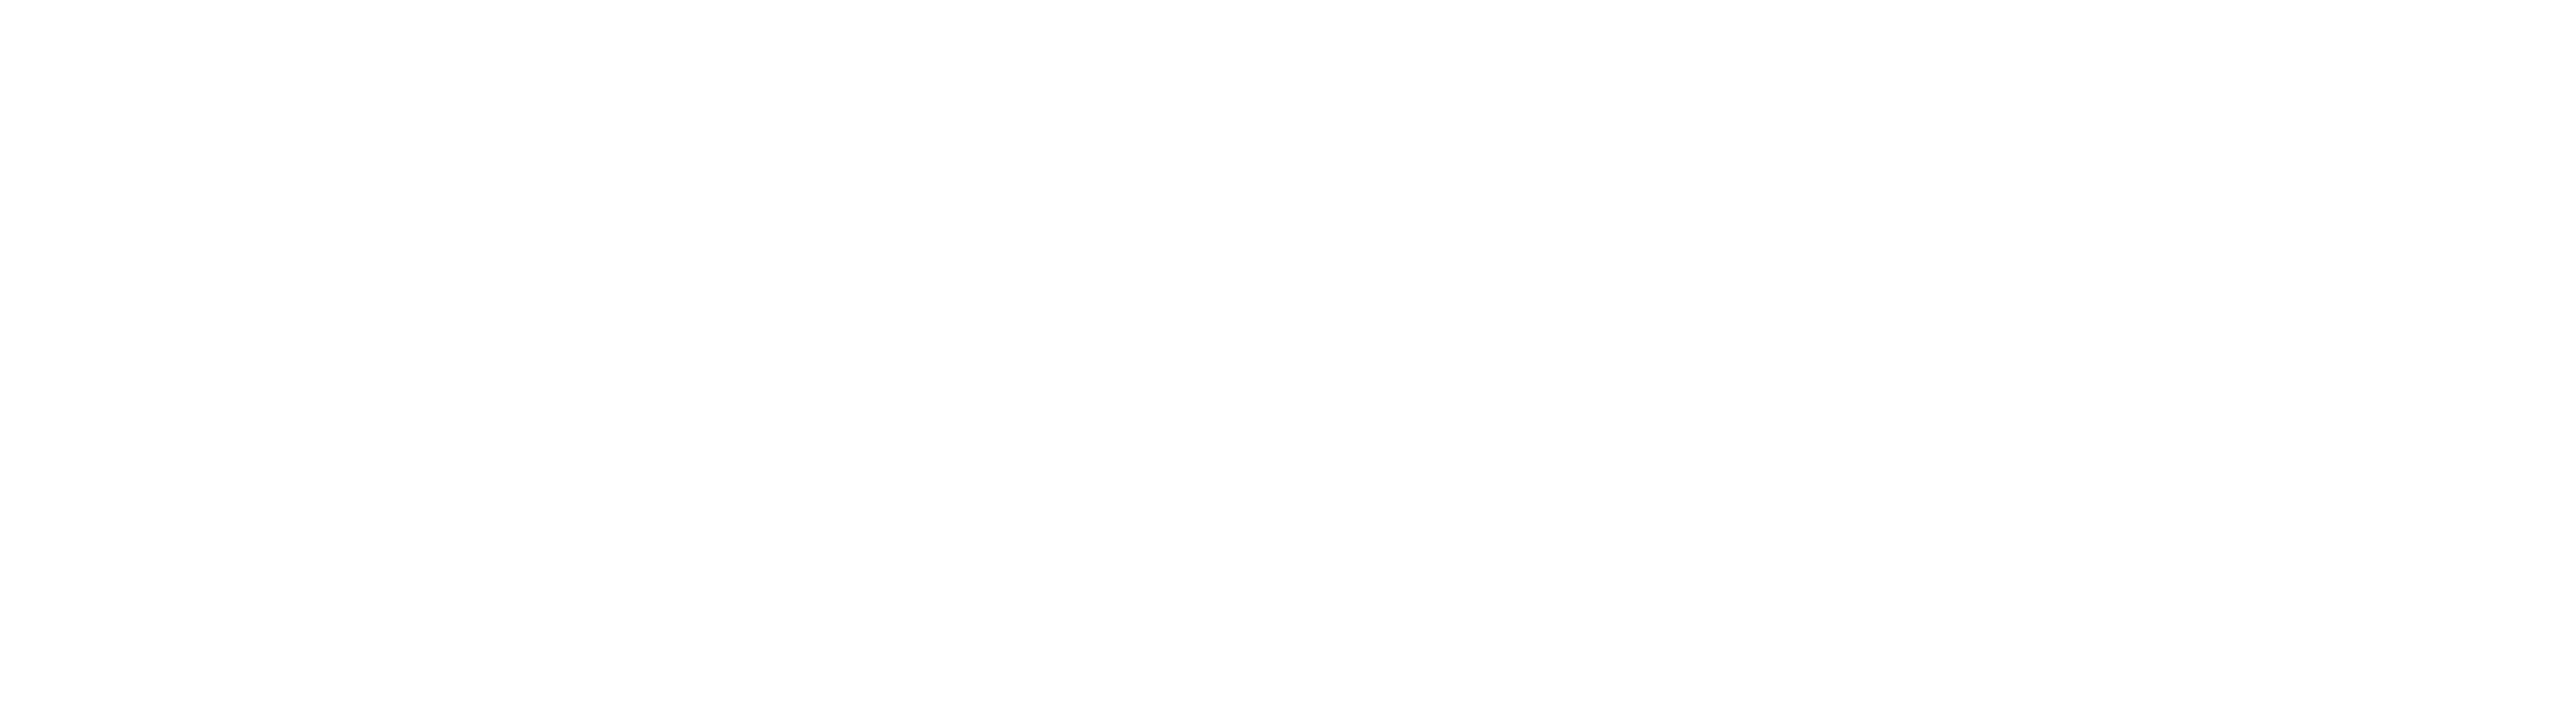 Black & White Photo awards logo in white